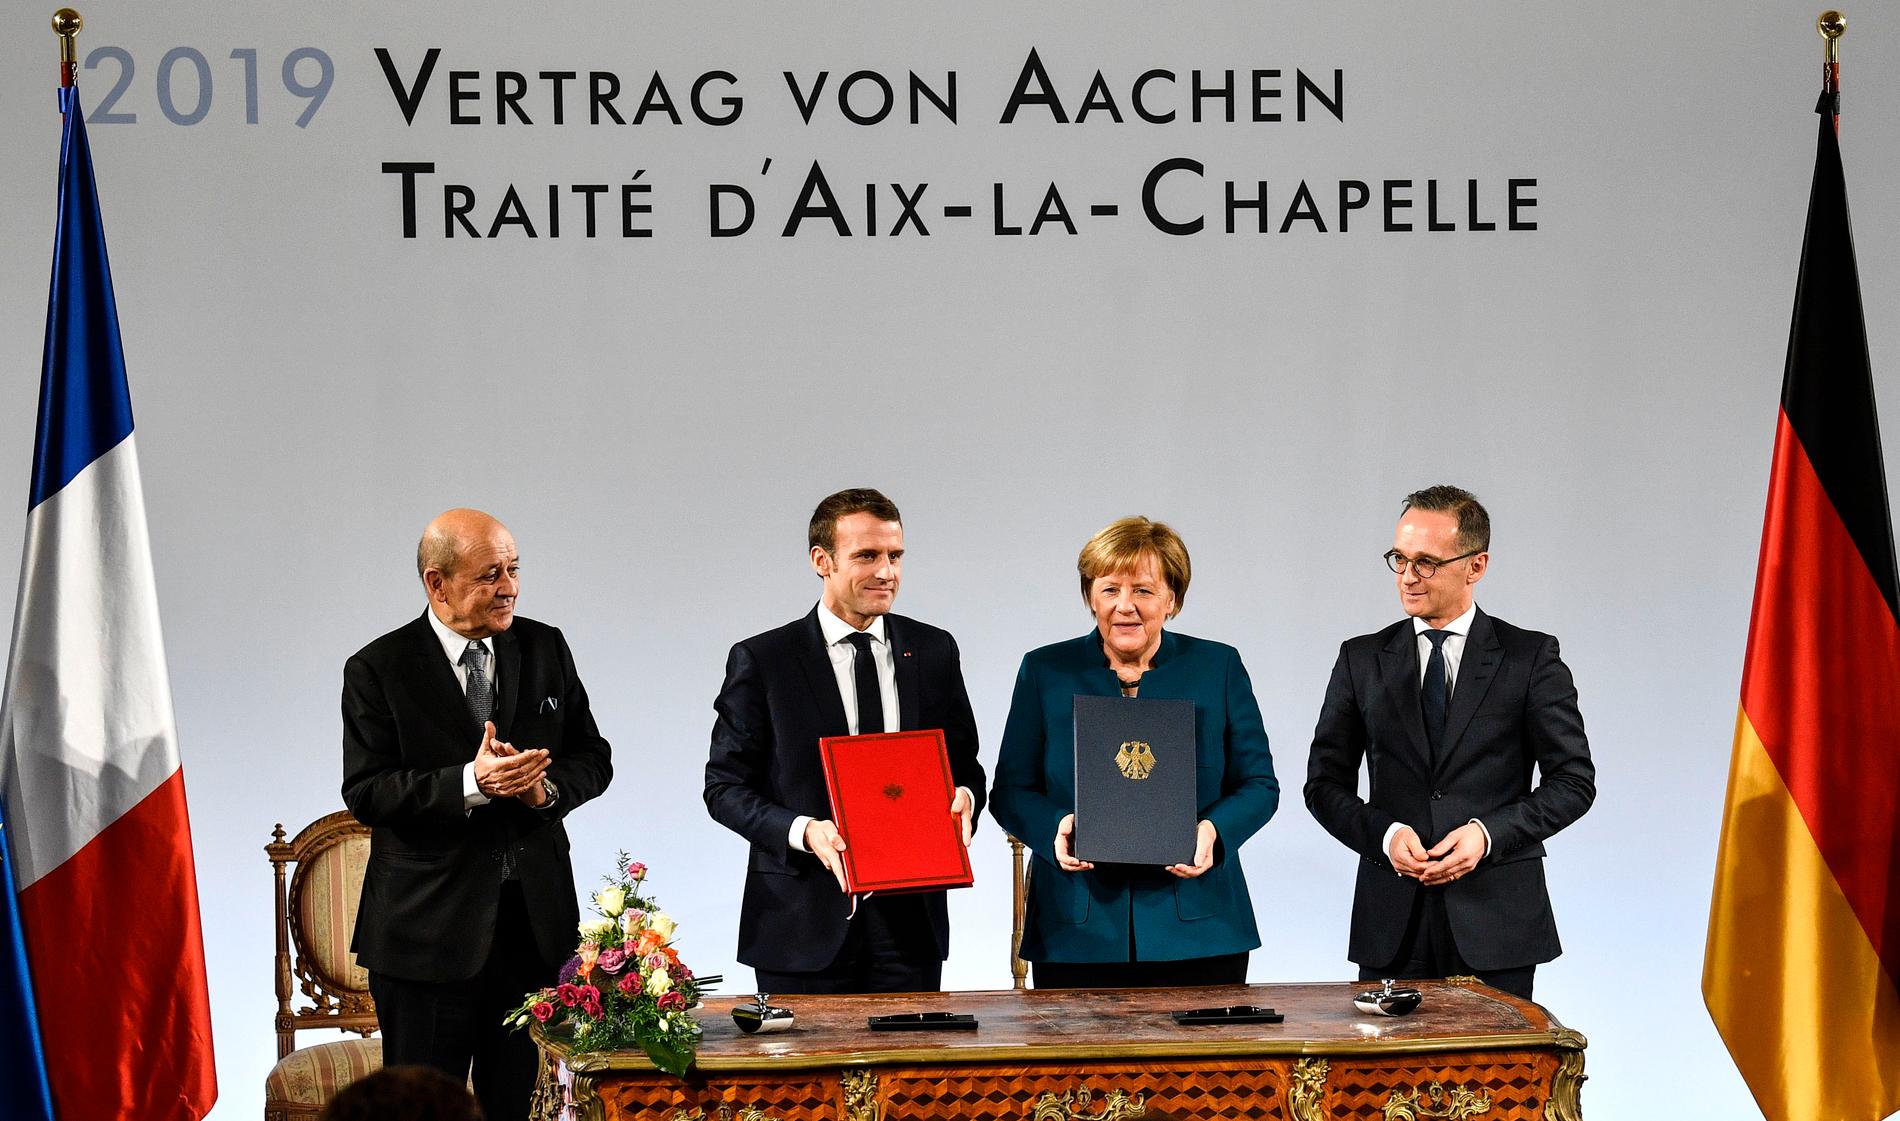 Frankrikes president Emmanuel Macron och Tysklands förbundskansler Angela Merkel, omgivna av sina utrikesministrar Jean-Yves Le Drian och Heiko Maas, efter undertecknandet av Aachen-fördraget.